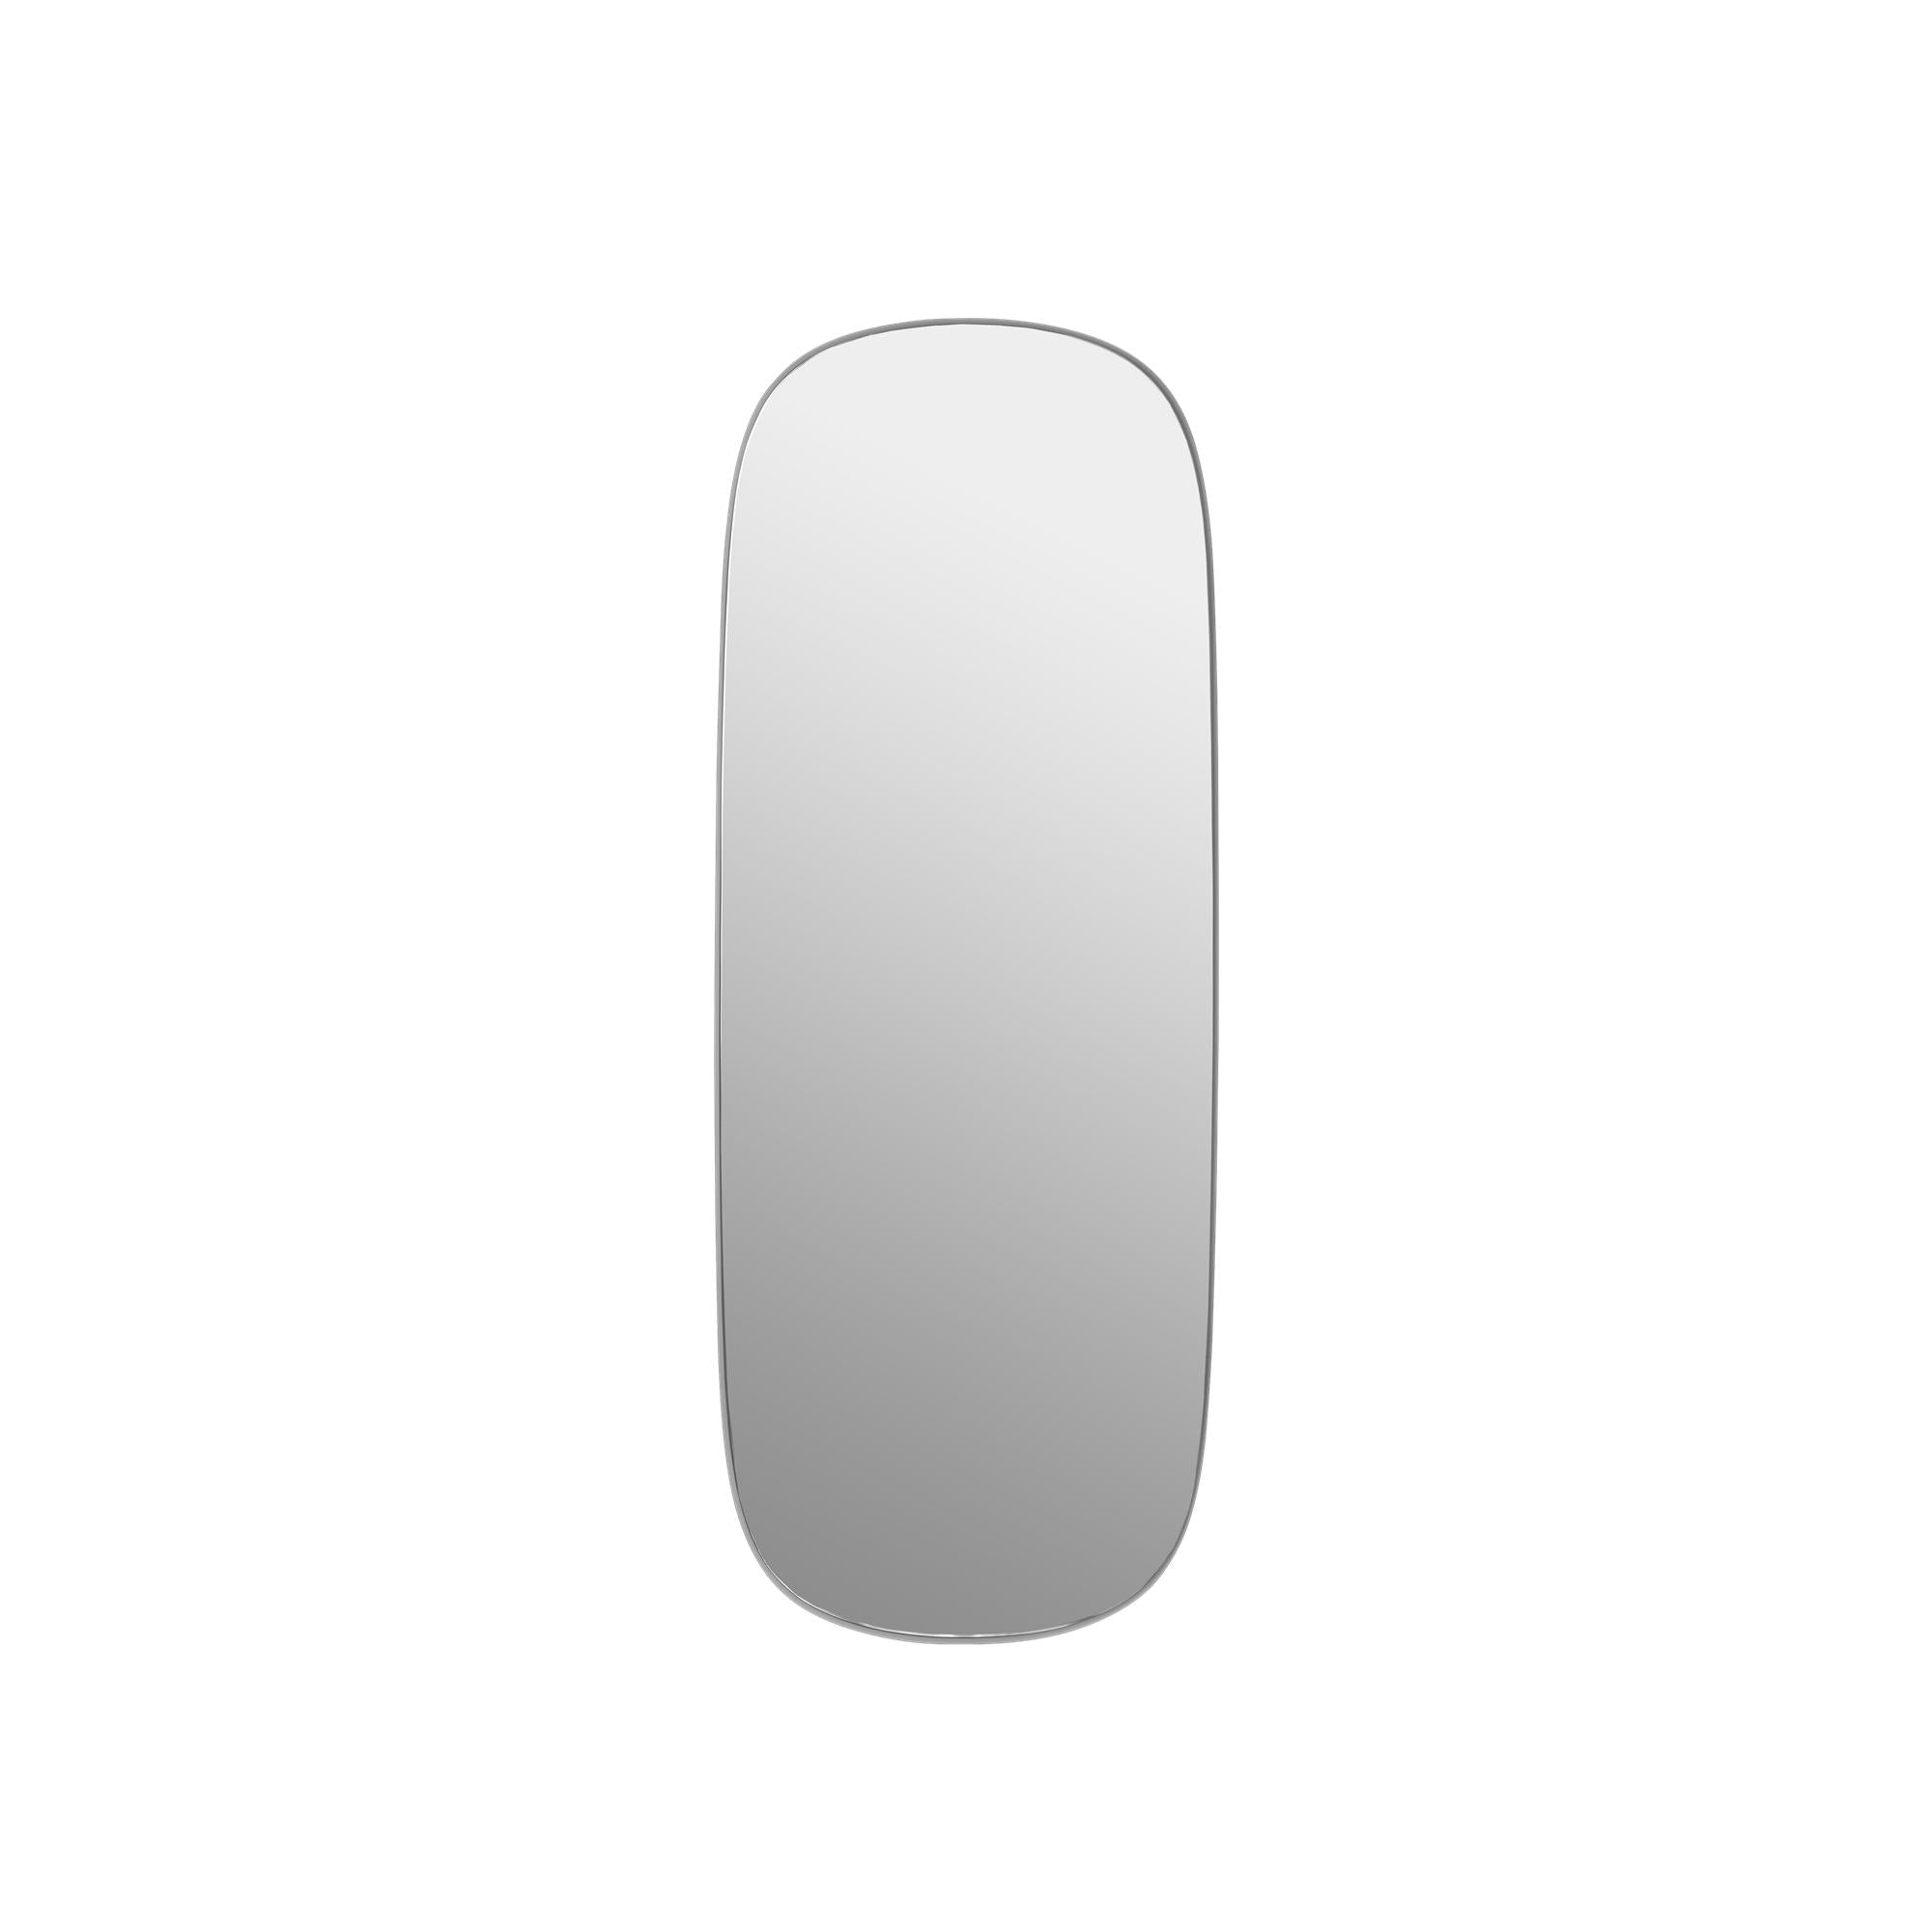 Muuto Inramad spegel spegel stor, grå/redo